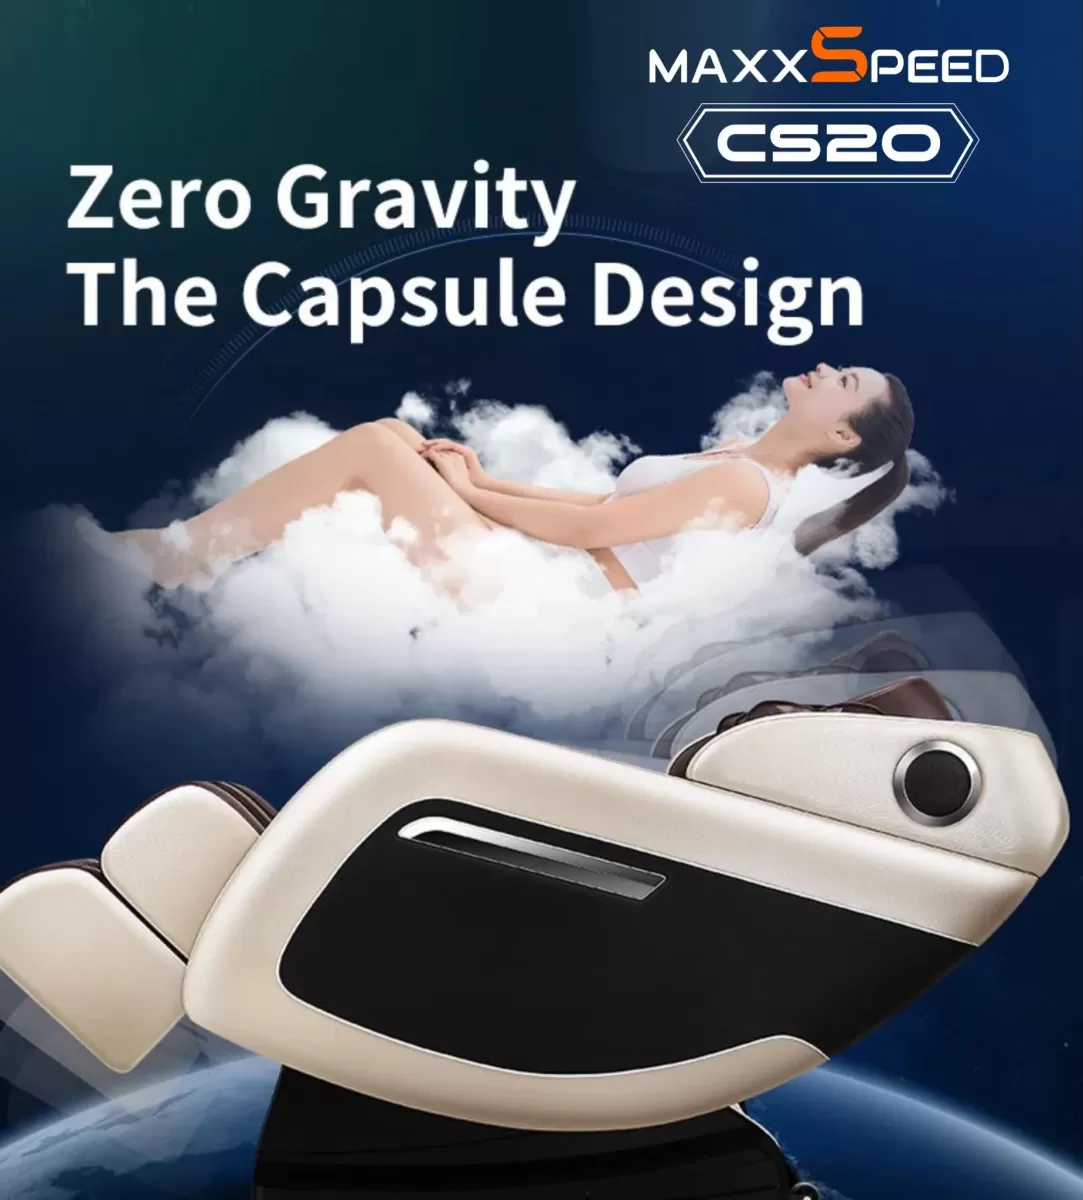 Chế độ Zero Gravity của Ghế Massage Azaki Maxxspeed CS20 - Đỏ chính hãng